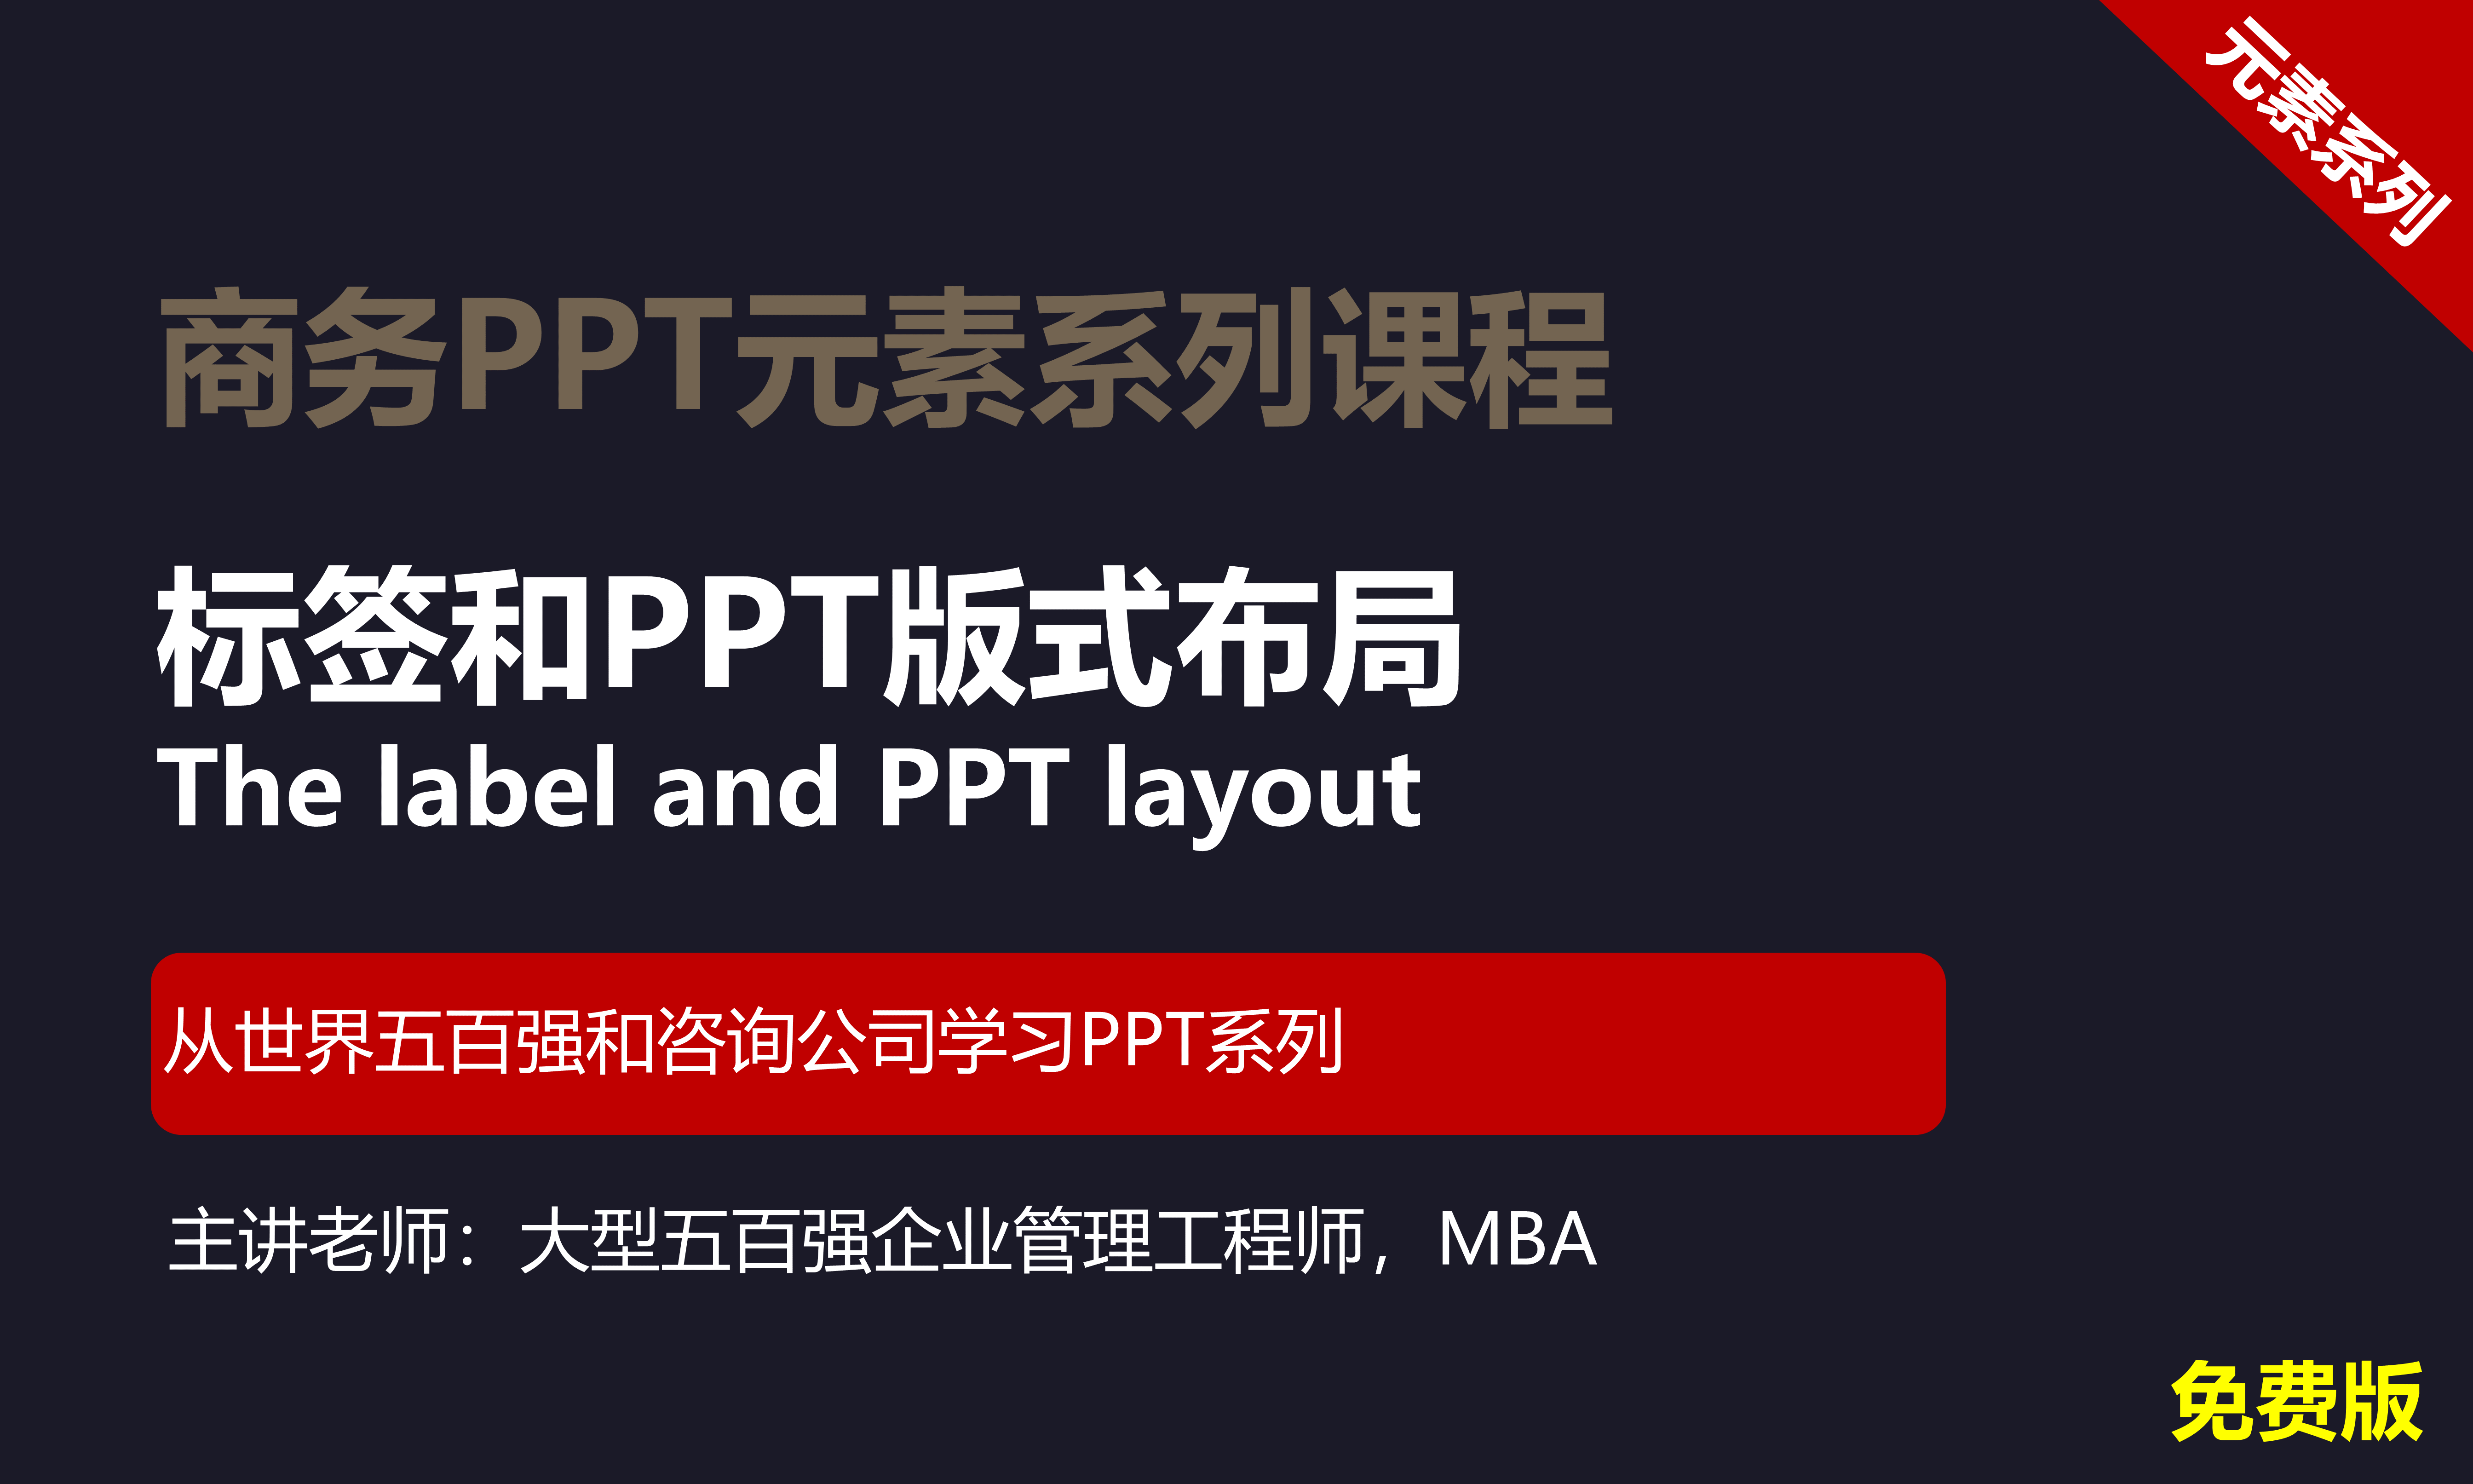 【司马懿】商务PPT设计进阶元素篇09【标签及版式设计】免费版